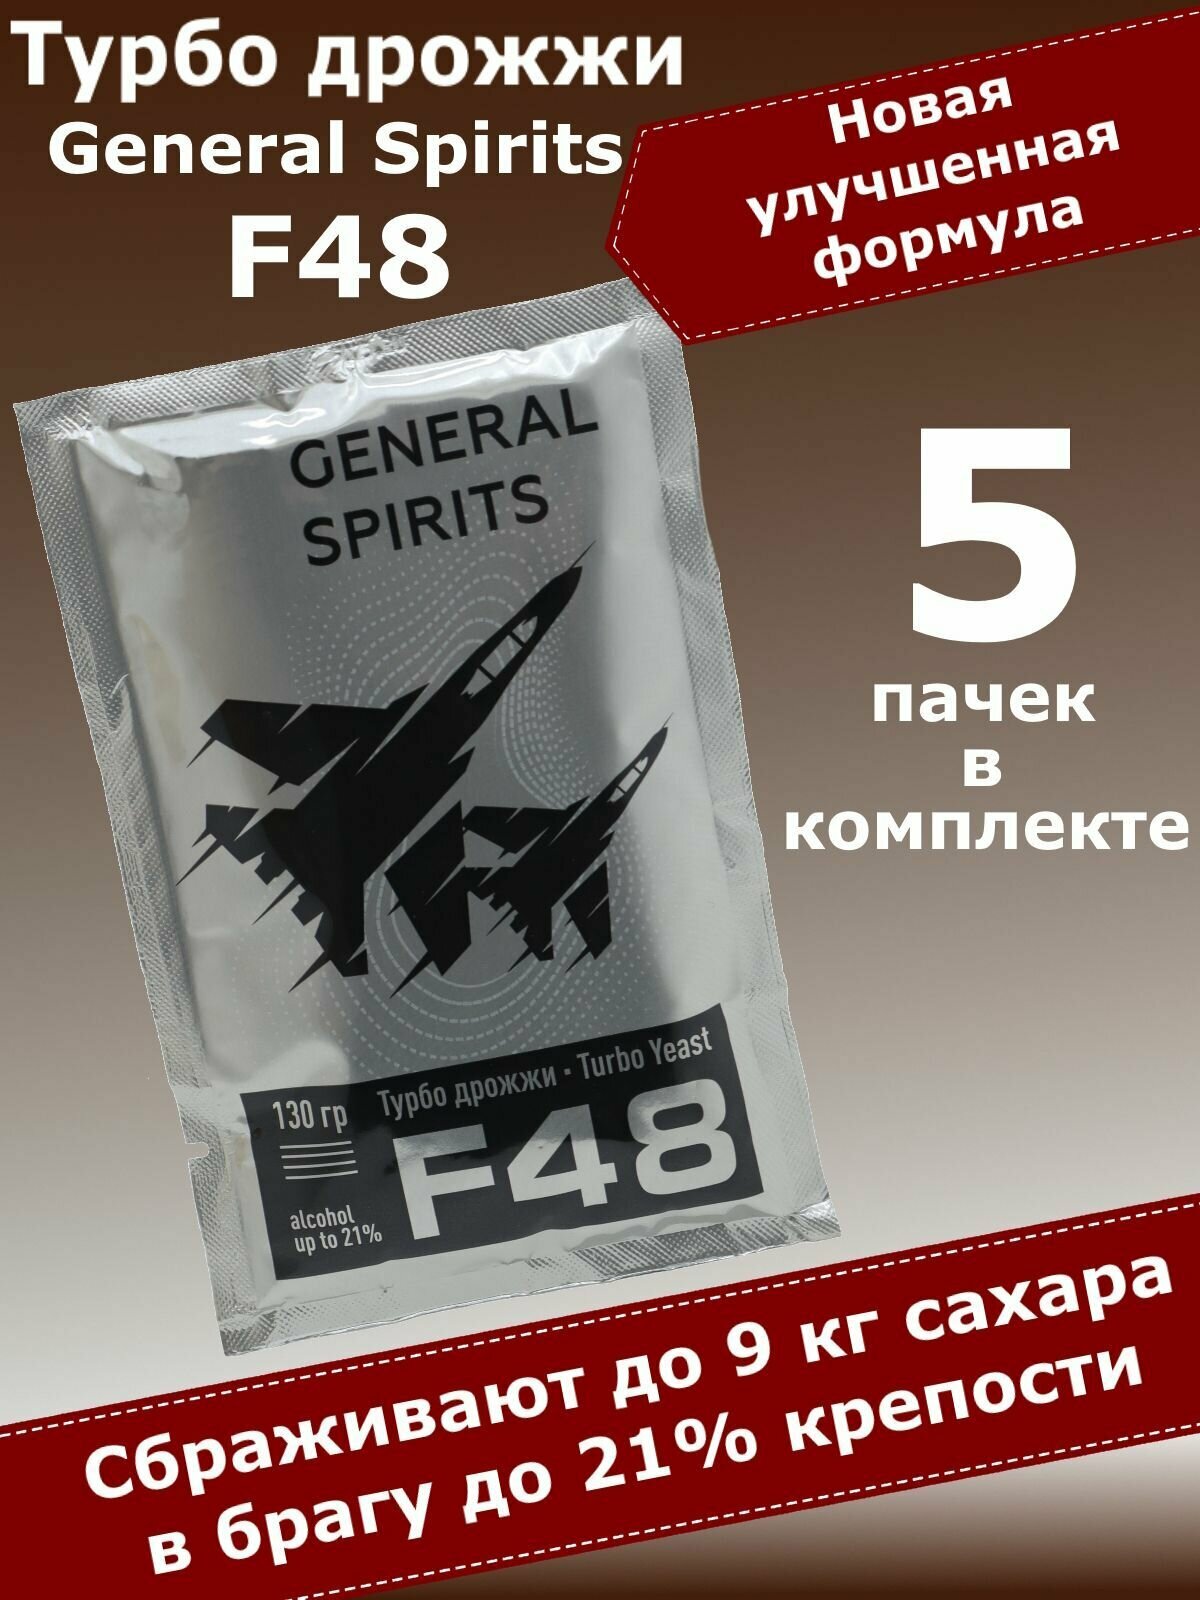 Спиртовые турбо дрожжи для самогона General Spirits F48, 130 гр (5 пачек)